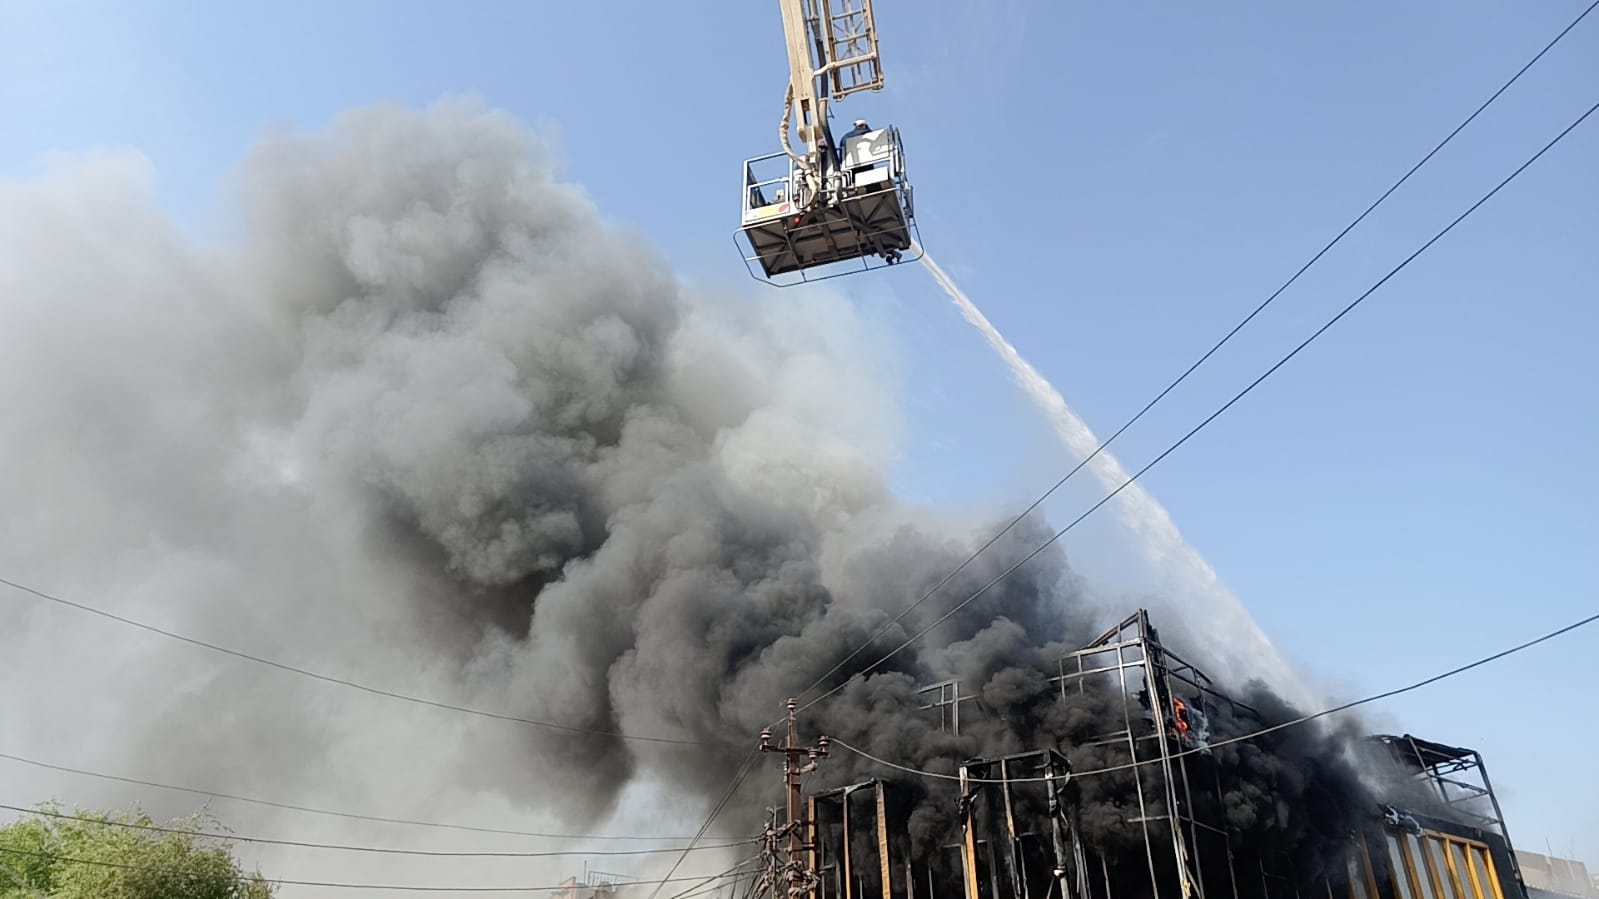 صور وفيديو.. إنقاذ عامل أجنبي من حريق كبير اندلع في بناية تجارية وسط بغداد